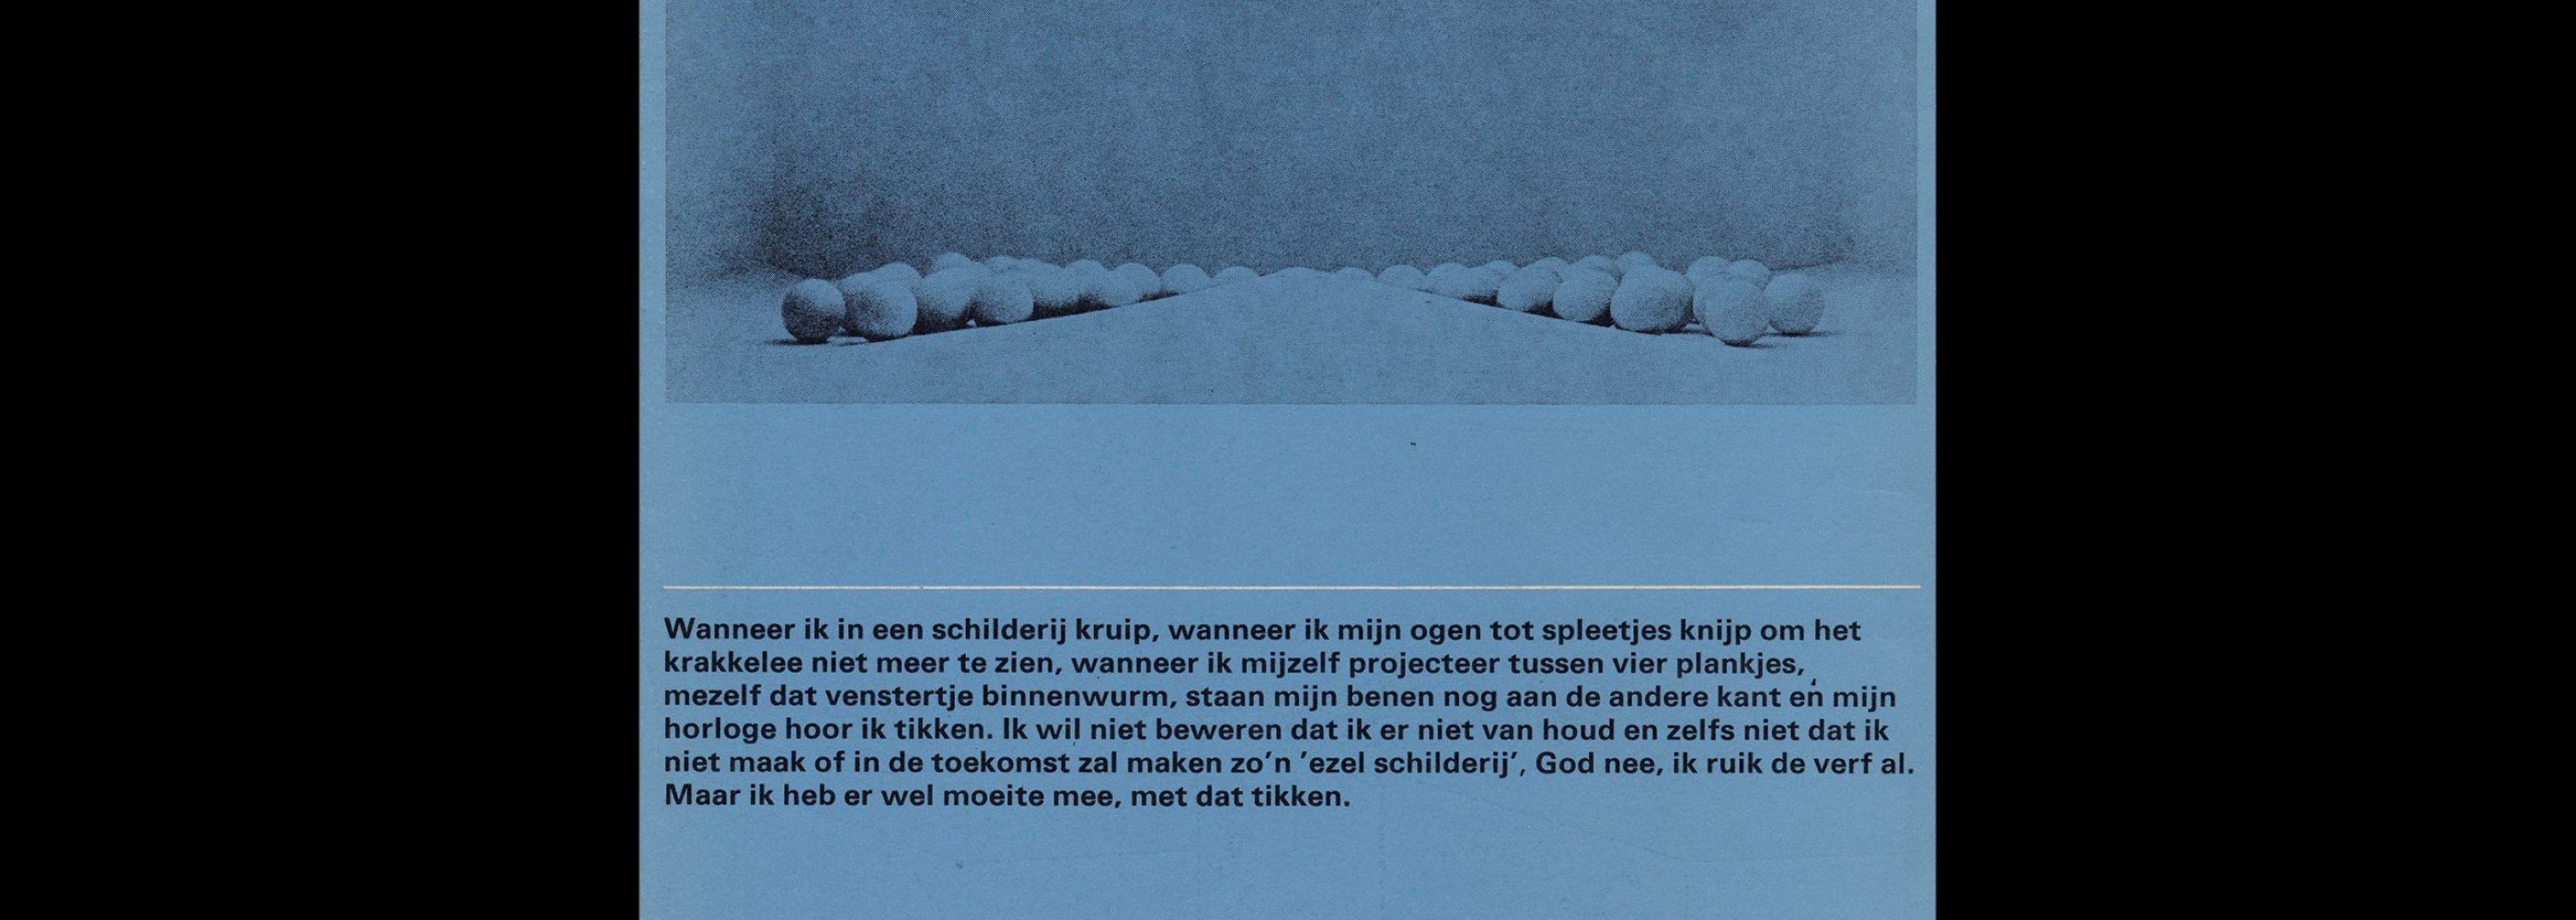 Gérard van den Eerenbeemt, Stedelijk Museum, Amsterdam, 1970 designed by Wim Crouwel and Jolijn van de Wouw (Total Design)